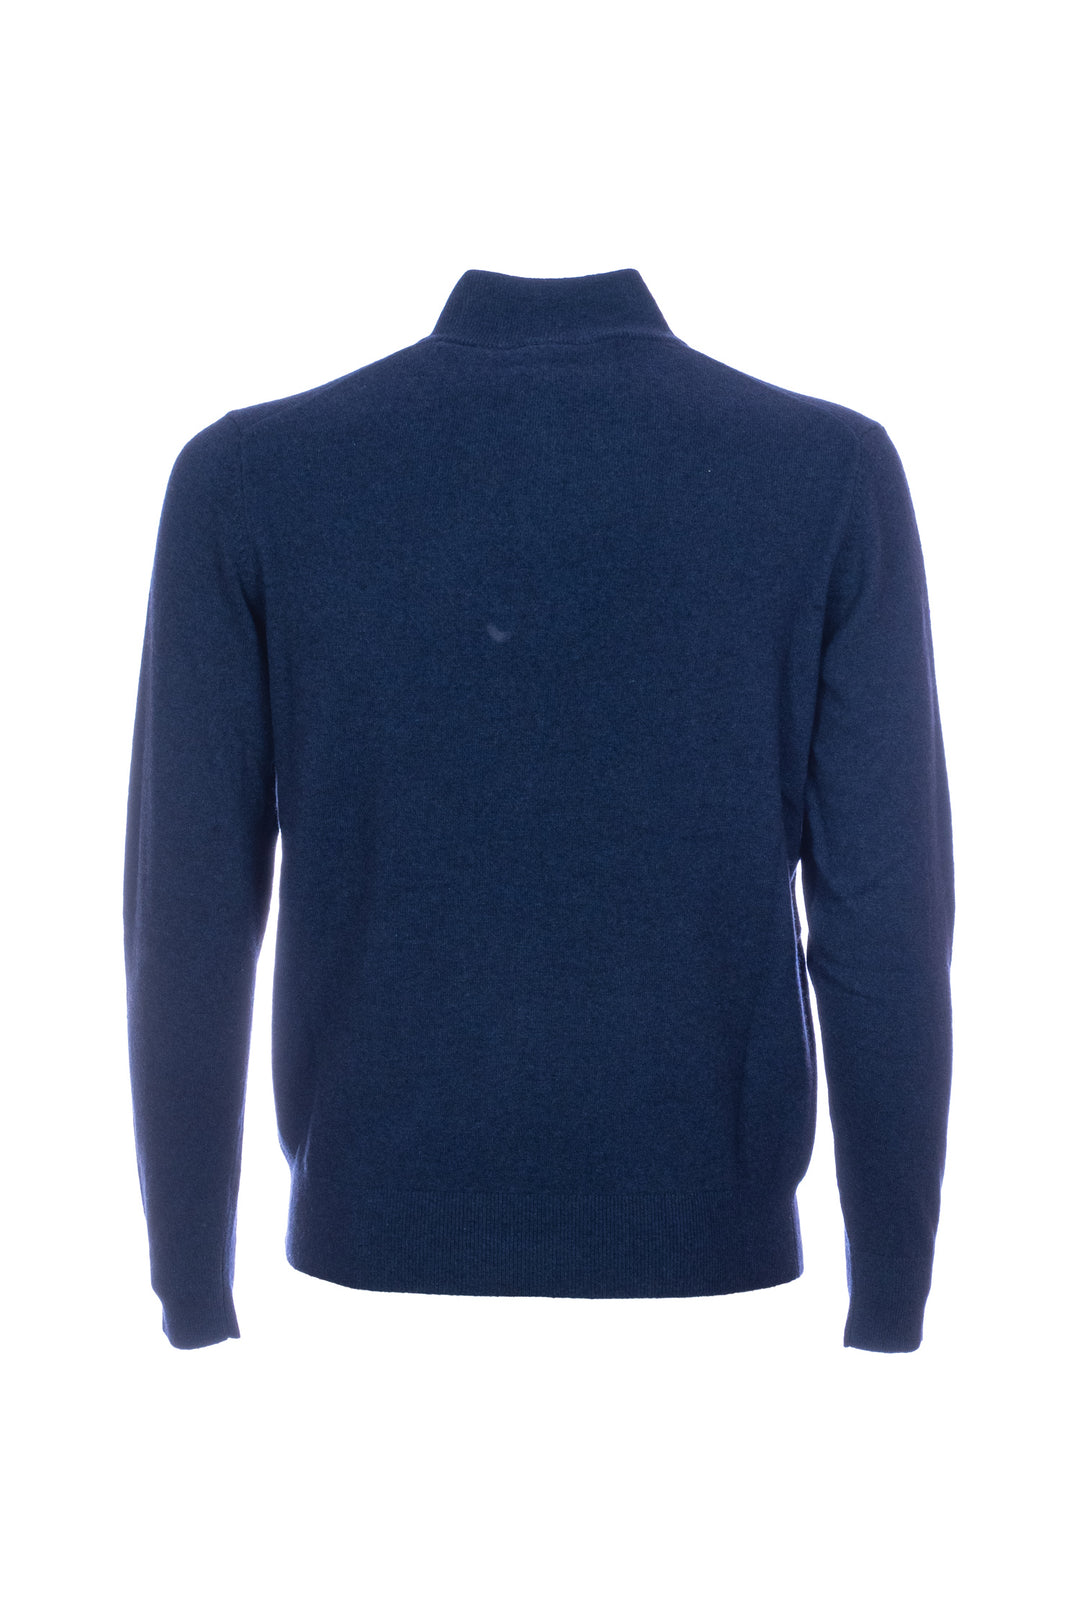 HDP Maglia mezza zip blu in misto lana merino e cashmere - Mancinelli 1954